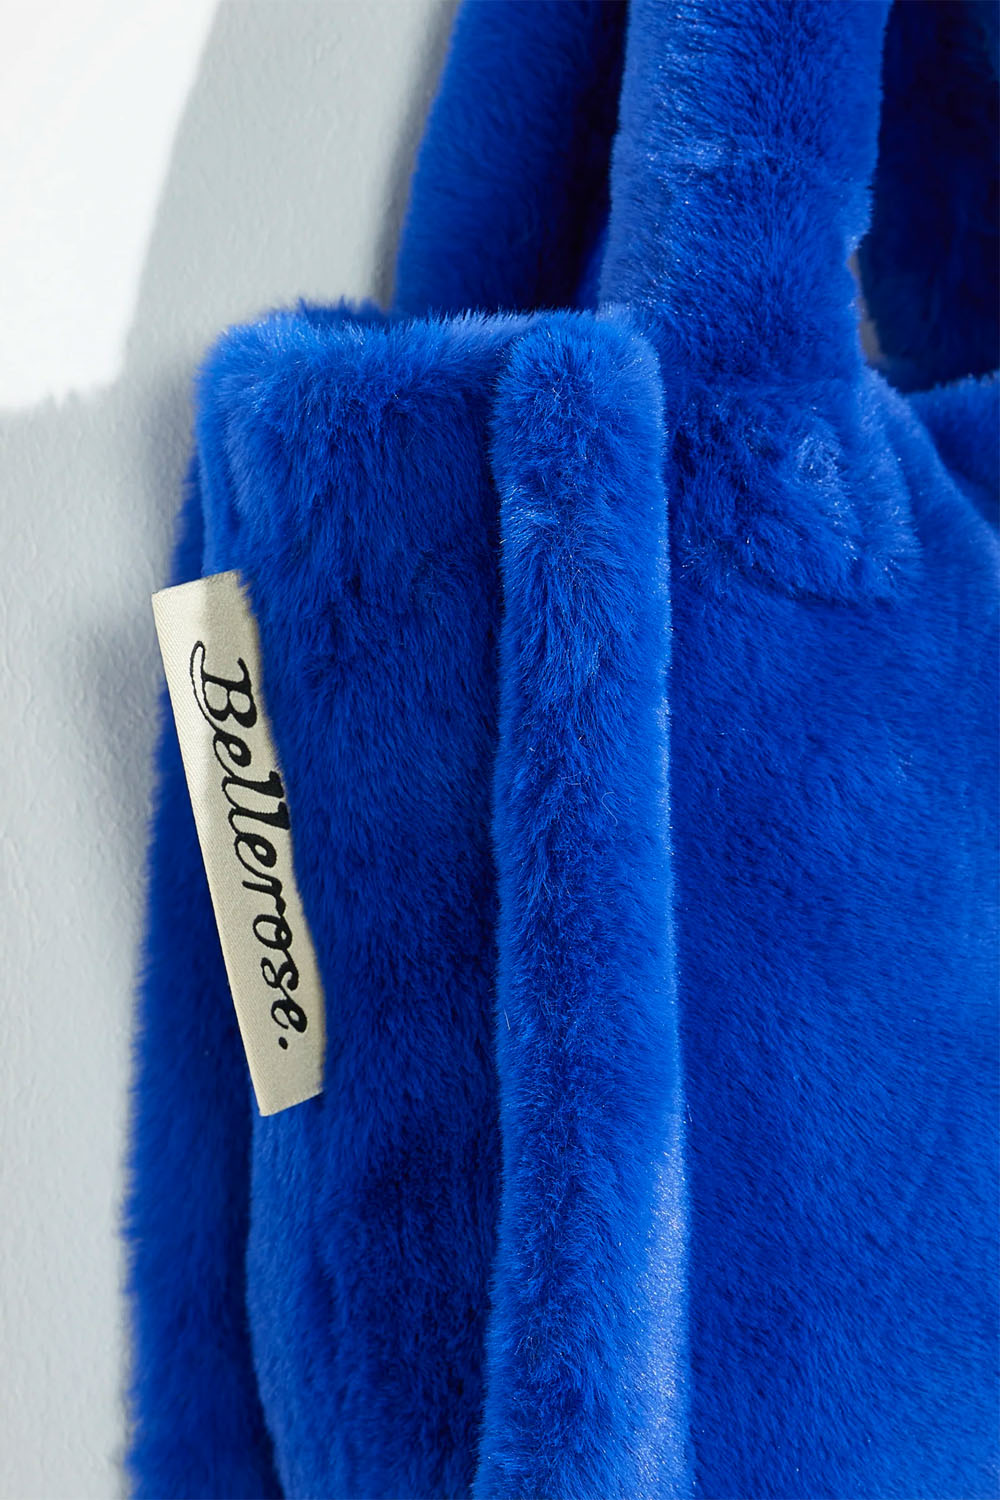 Bellerose - Edoux Bag: Lazuli